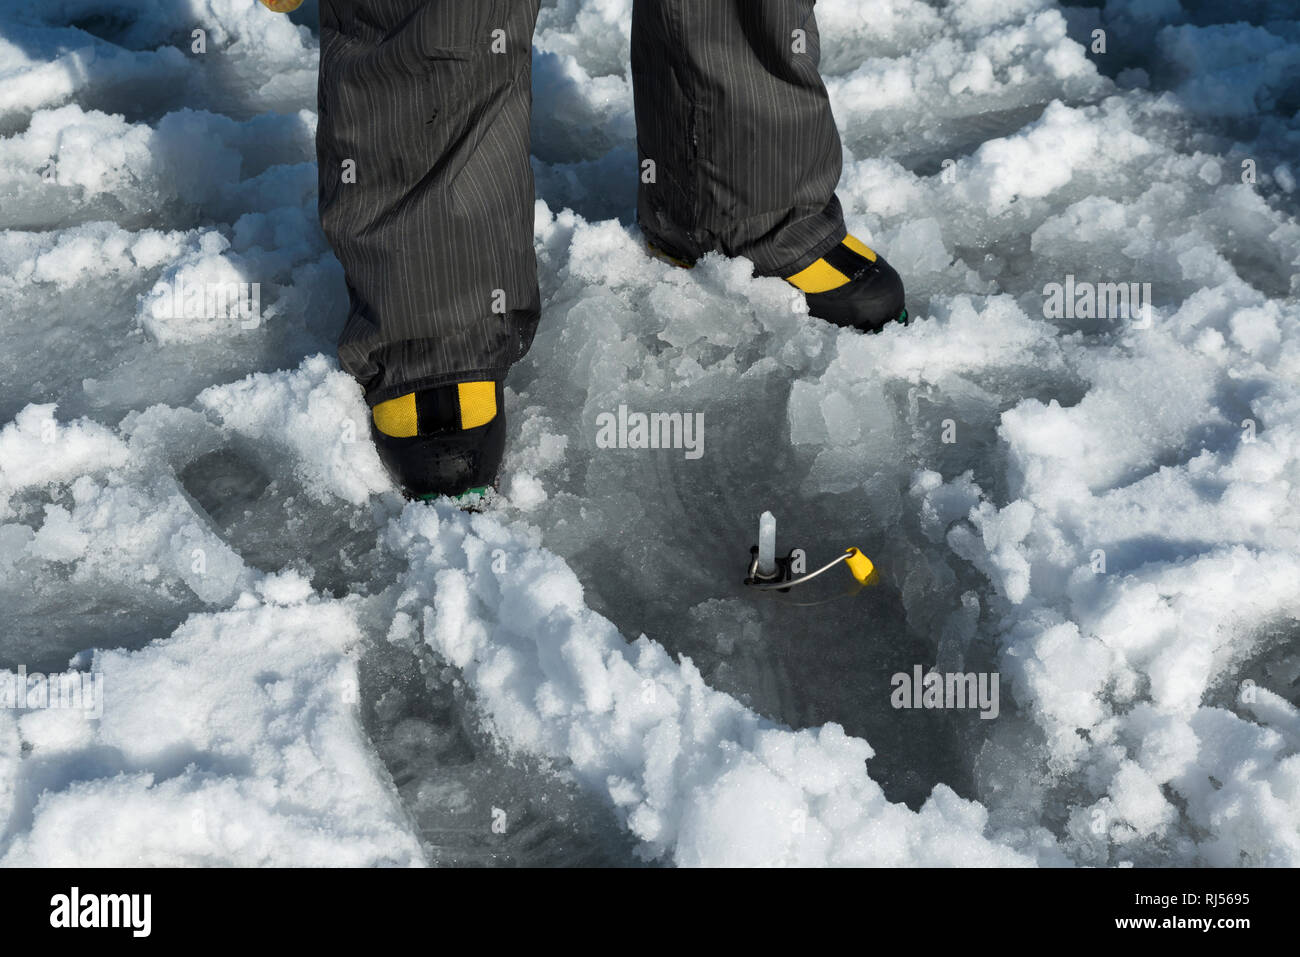 Les chaussures jaunes et jaune broche à glace percer dans un lac gelé. Selective focus Banque D'Images